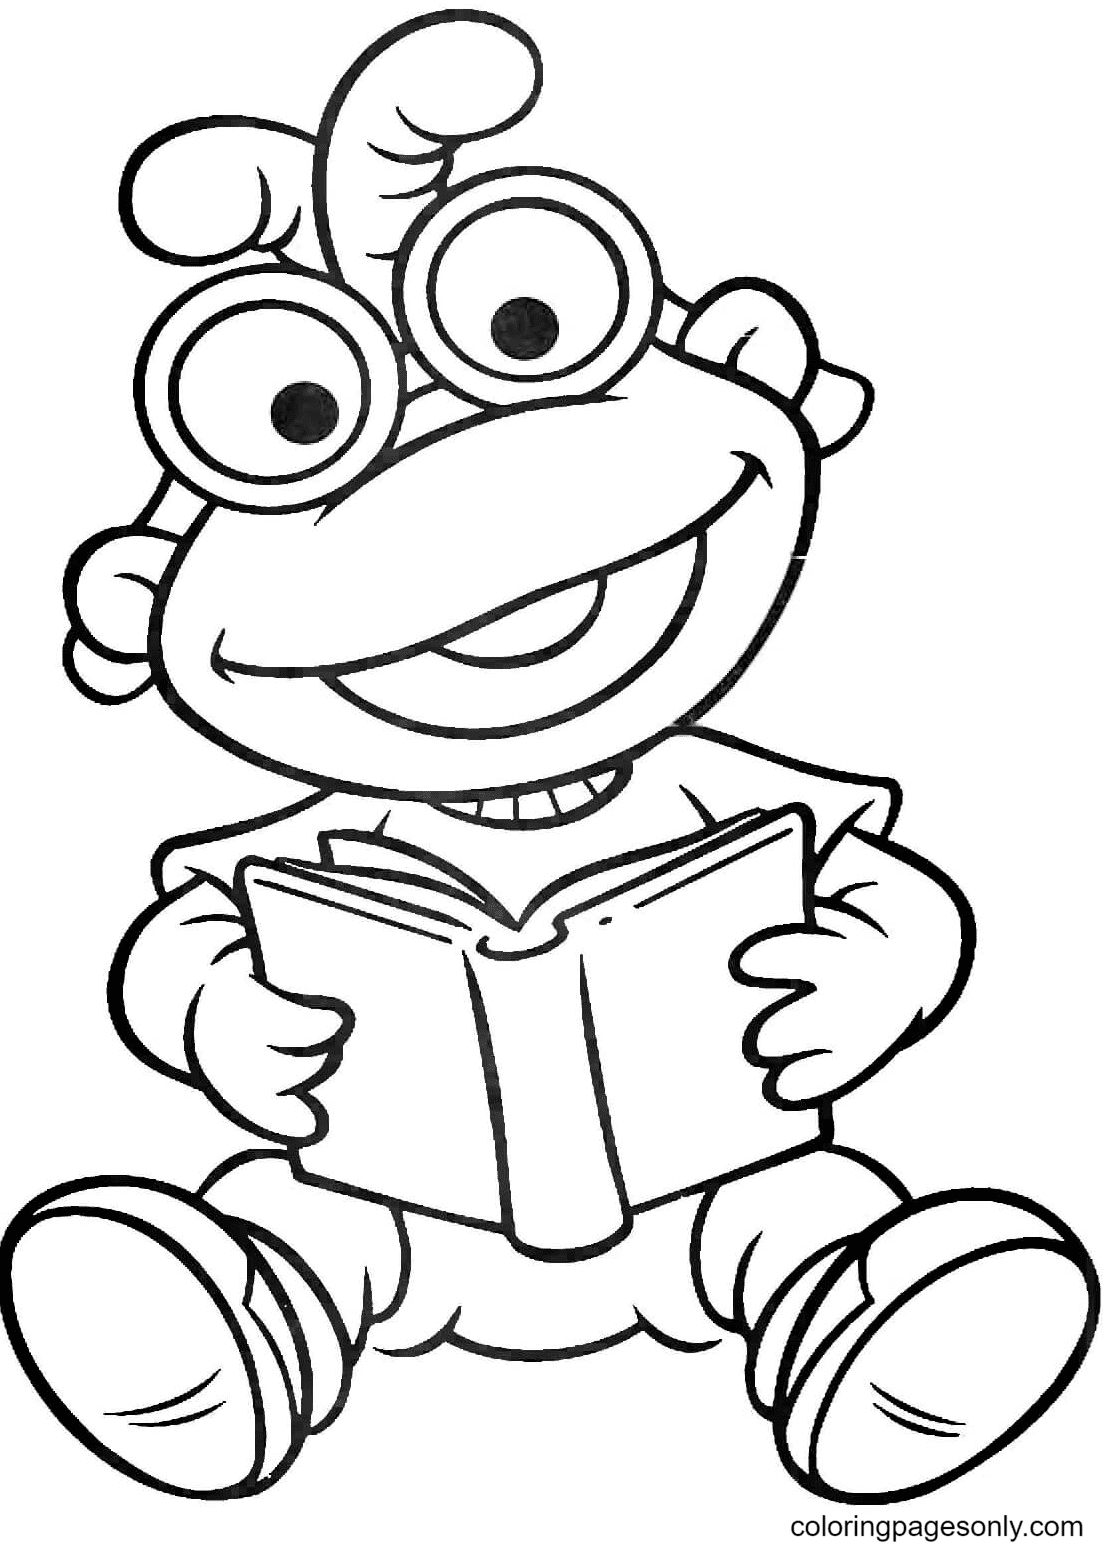 Baby Scooter está lendo um livro de Muppet Babies